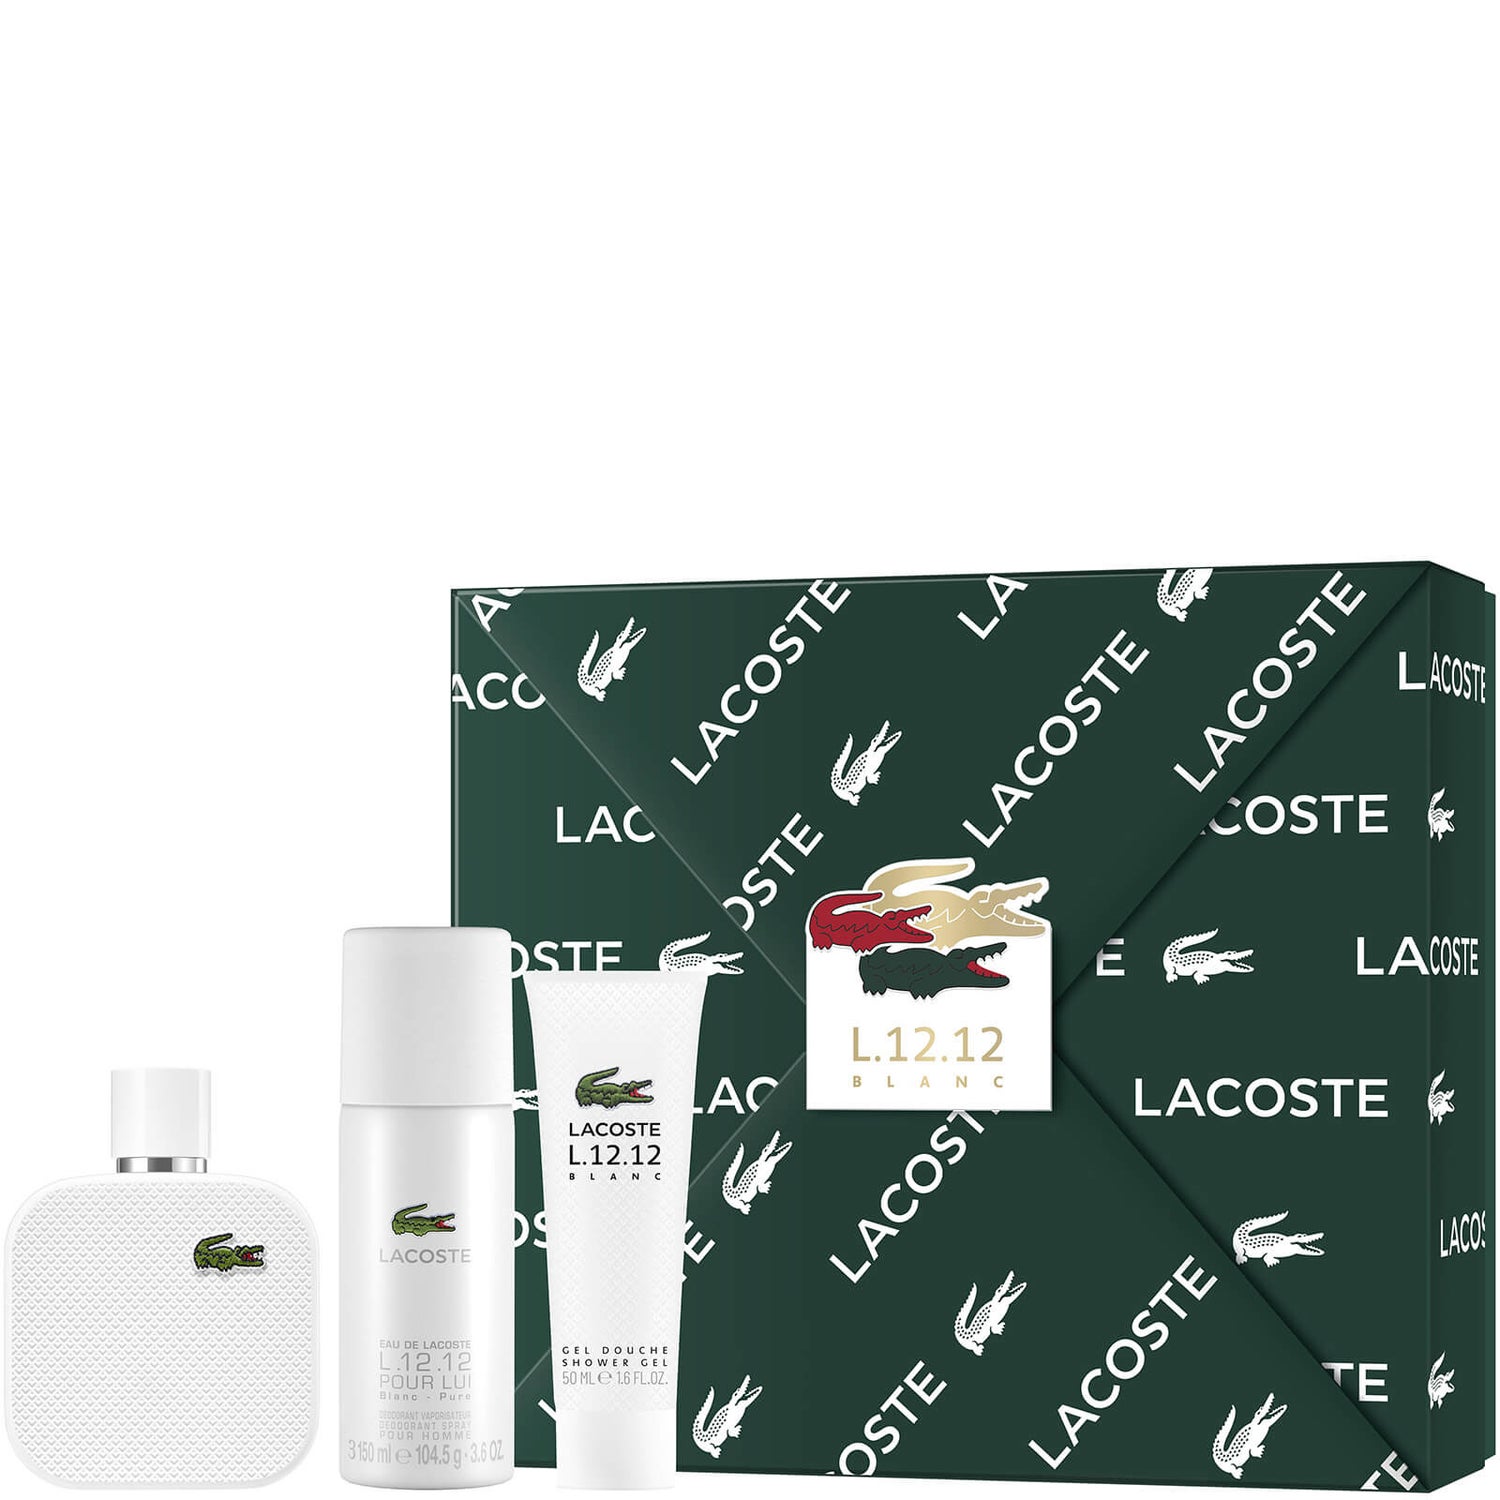 Lacoste L.12.12 Blanc For Him Eau De Toilette 100ml σετ δώρου